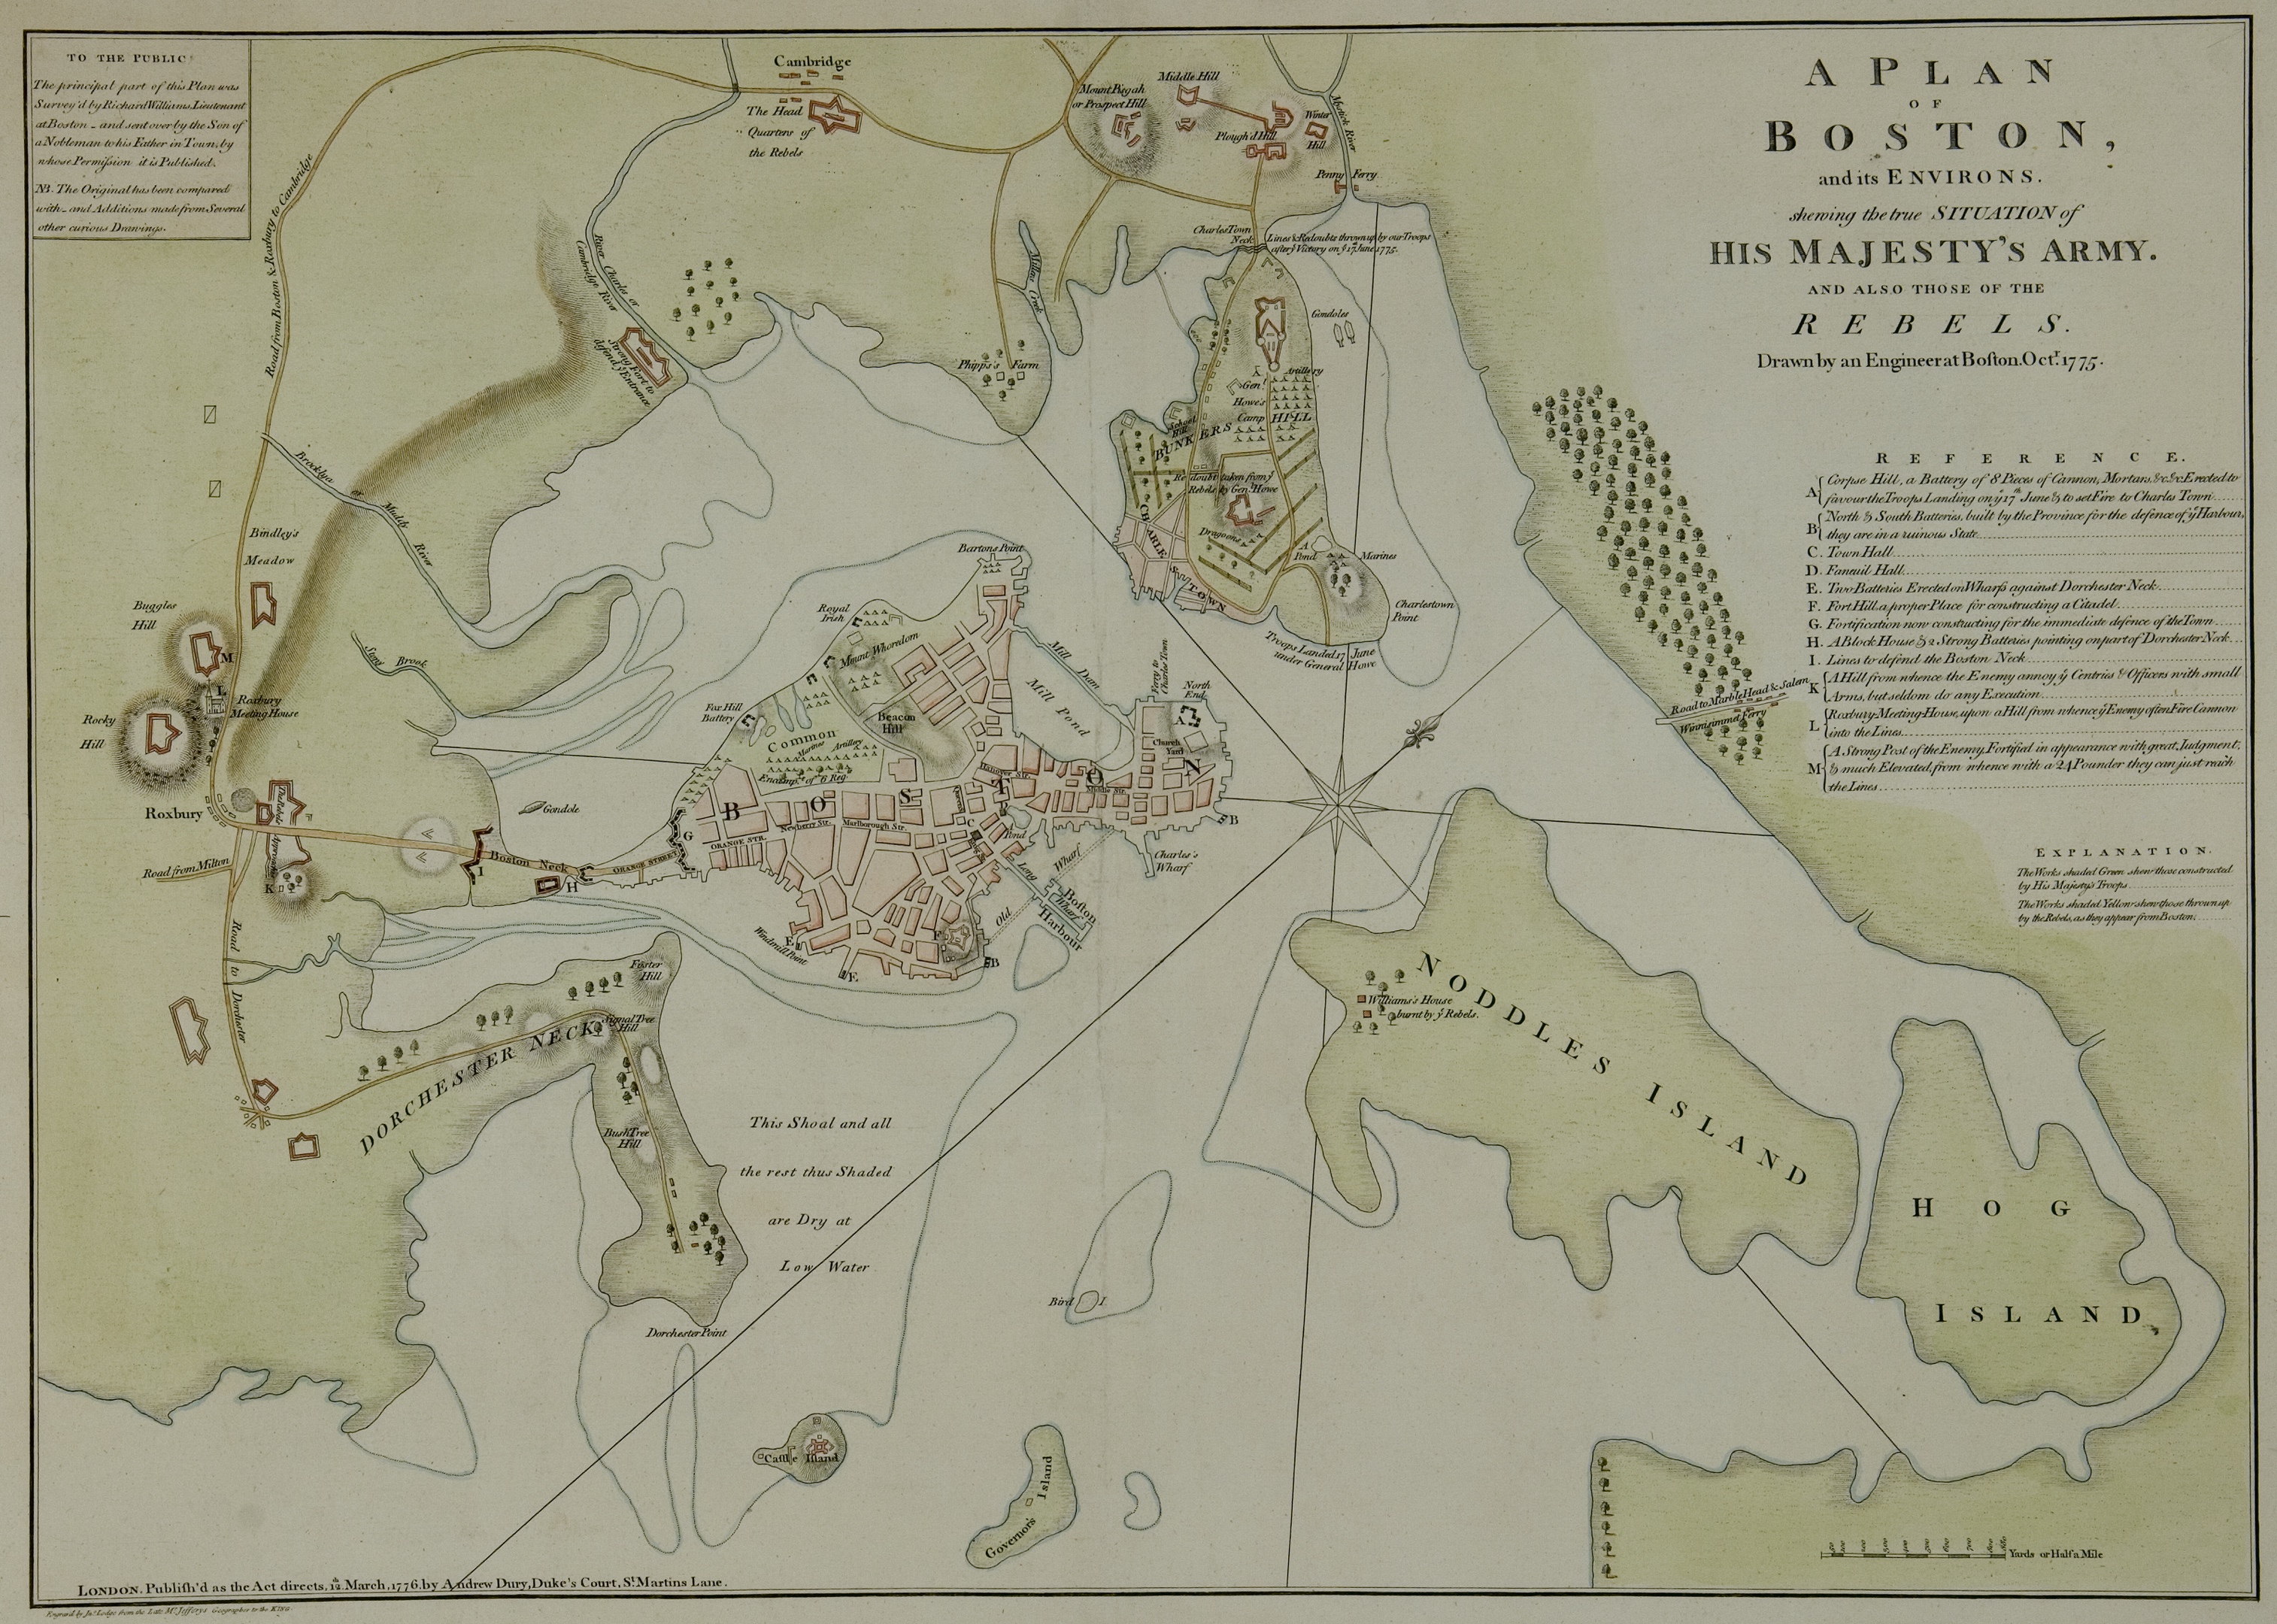 1 A Plan of Boston, 1776